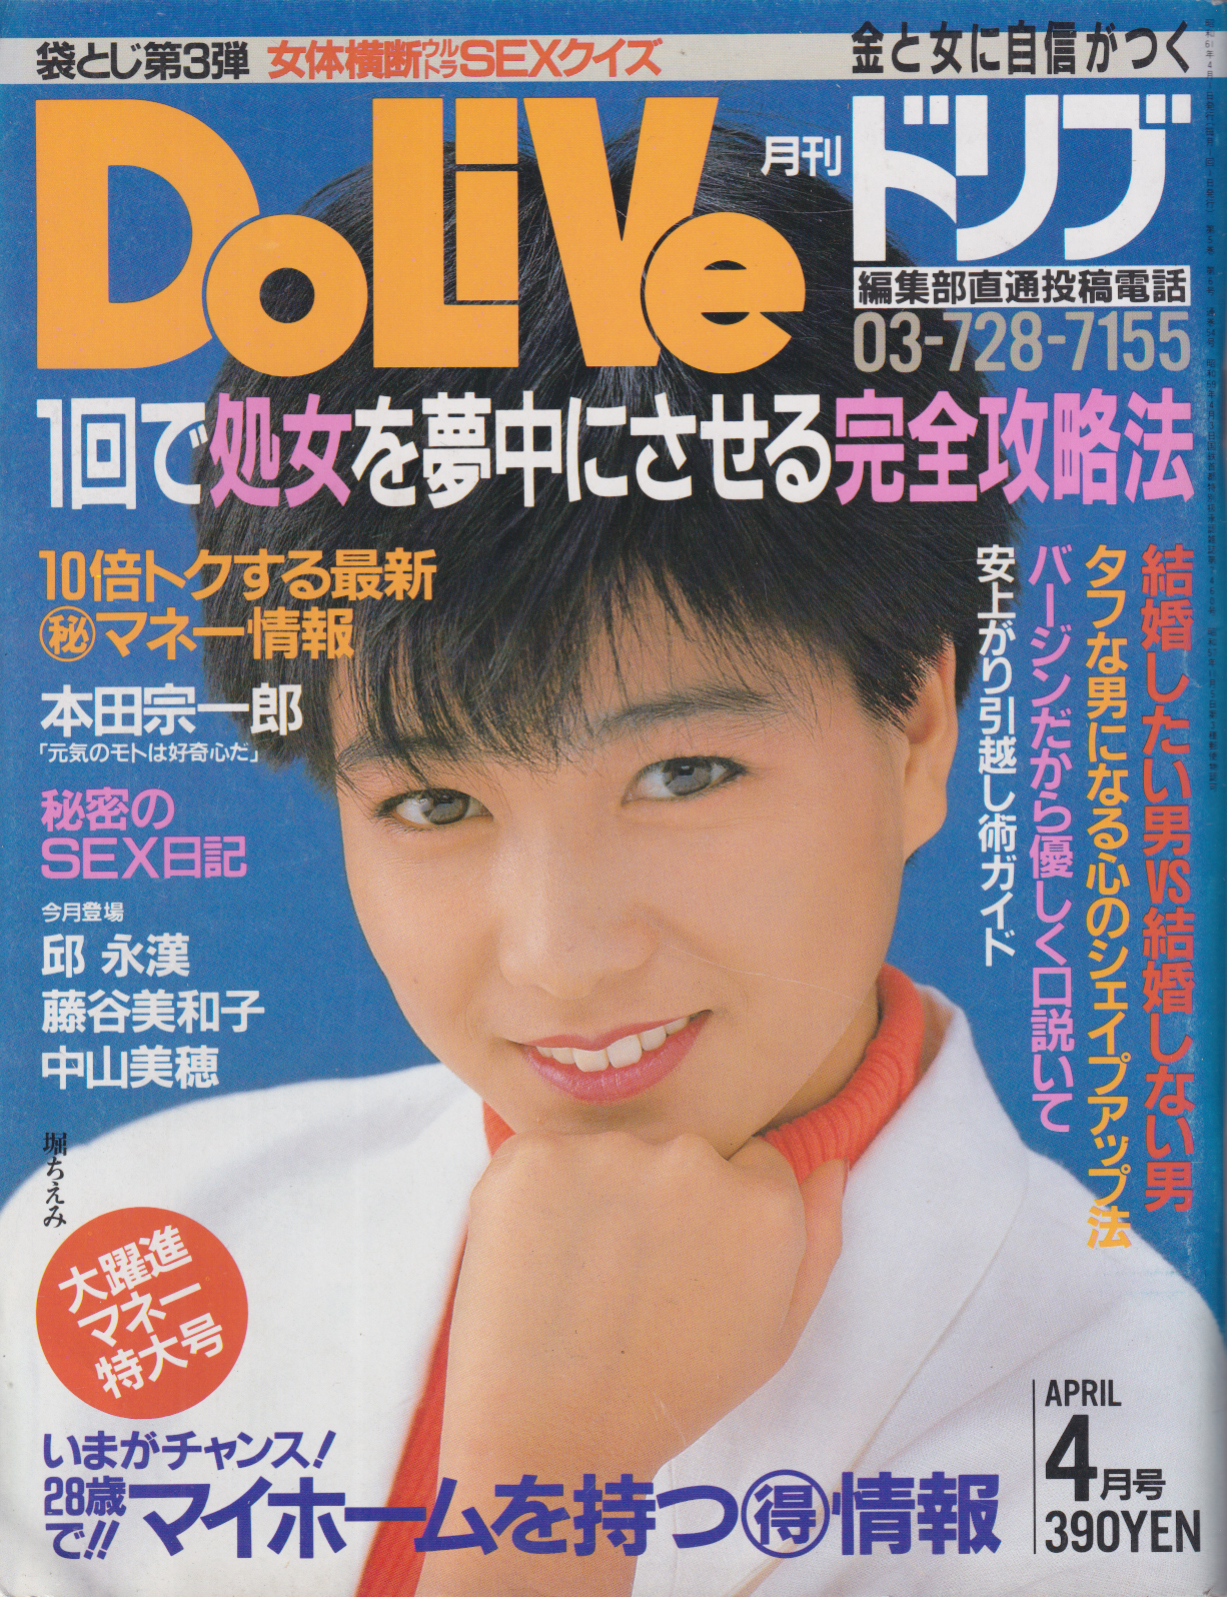  ドリブ/DOLIVE 1986年4月号 雑誌